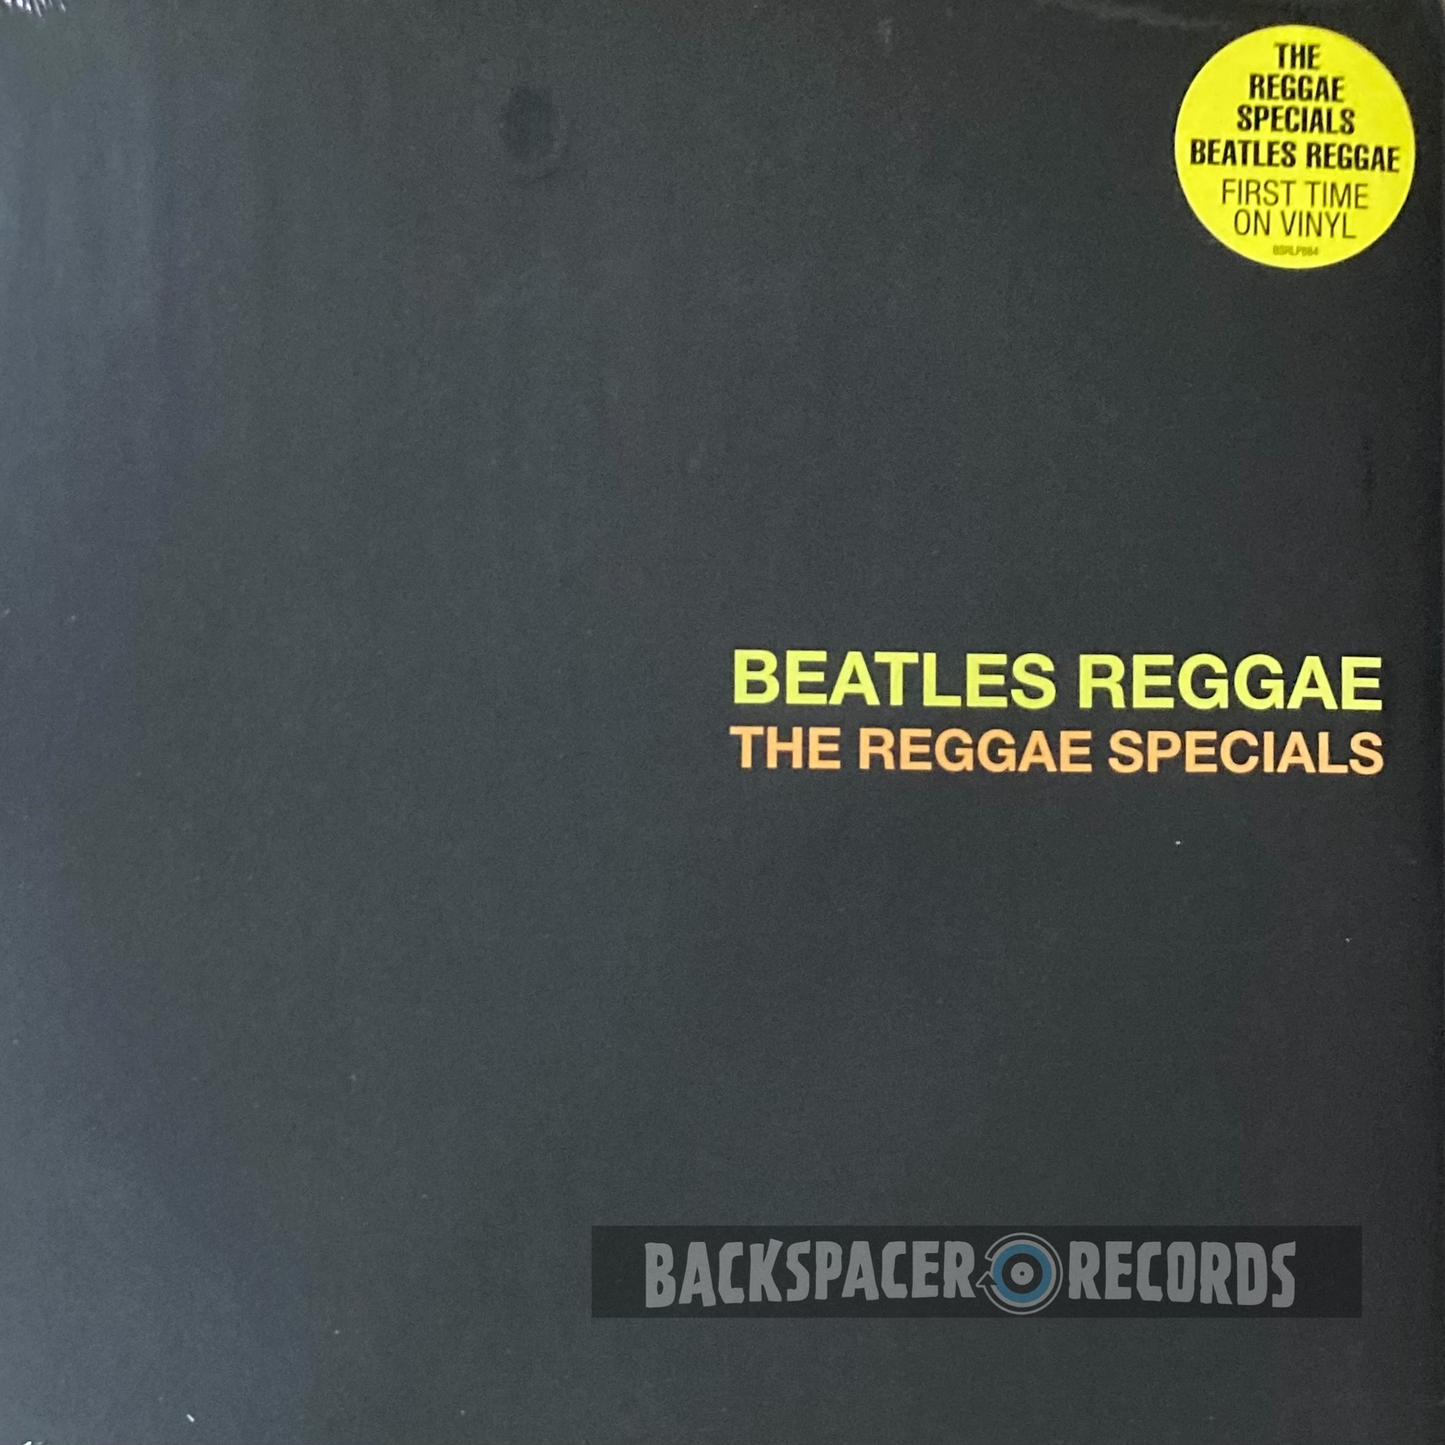 The Reggae Specials – Beatles Reggae LP (Limited Edition)